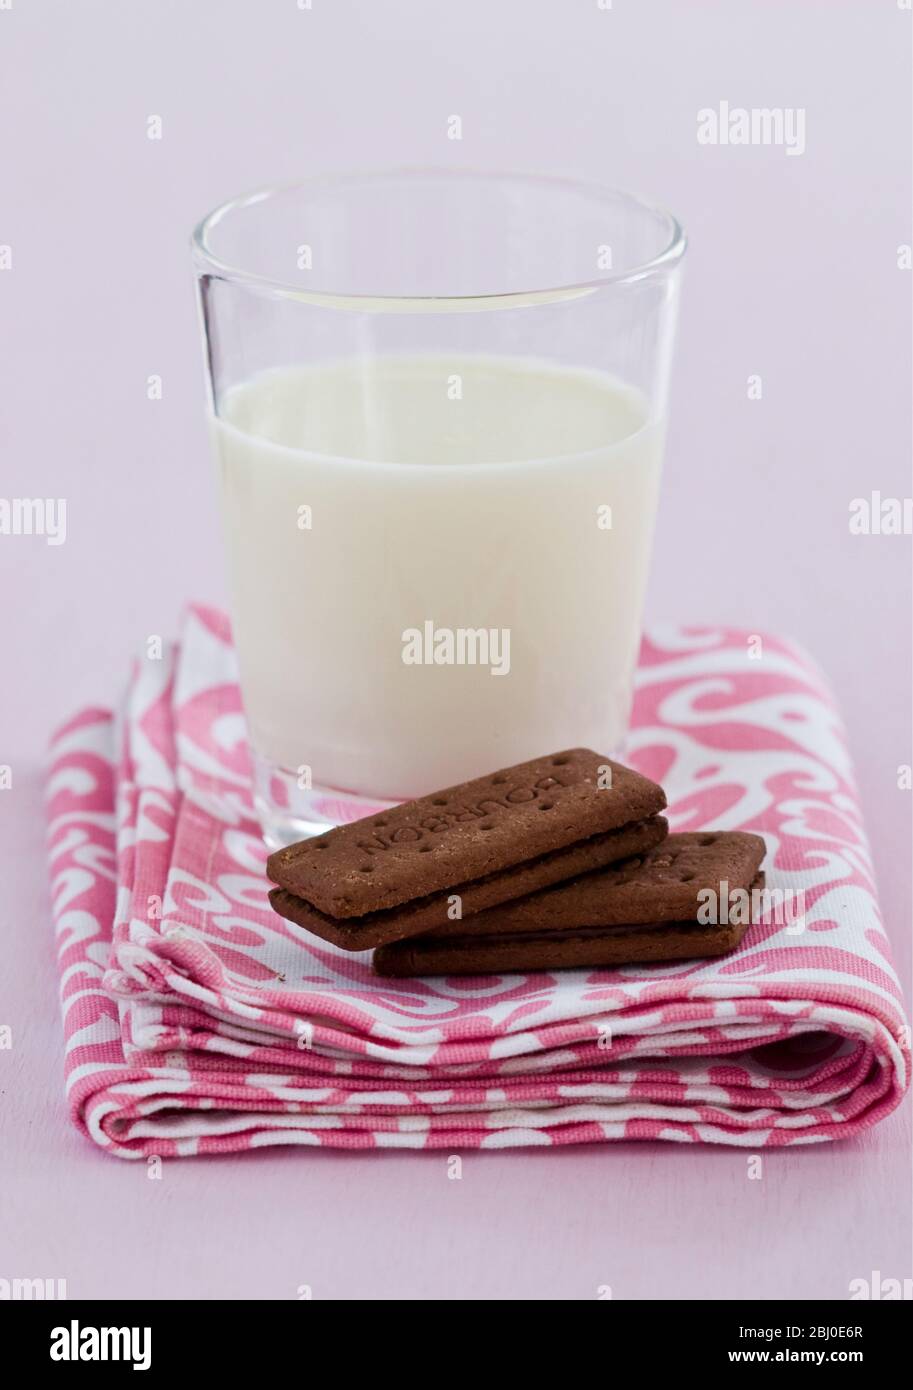 Schlafensnack von einem Glas kalte frische Milch mit Bourbon-Schokolade Kekse - Stockfoto